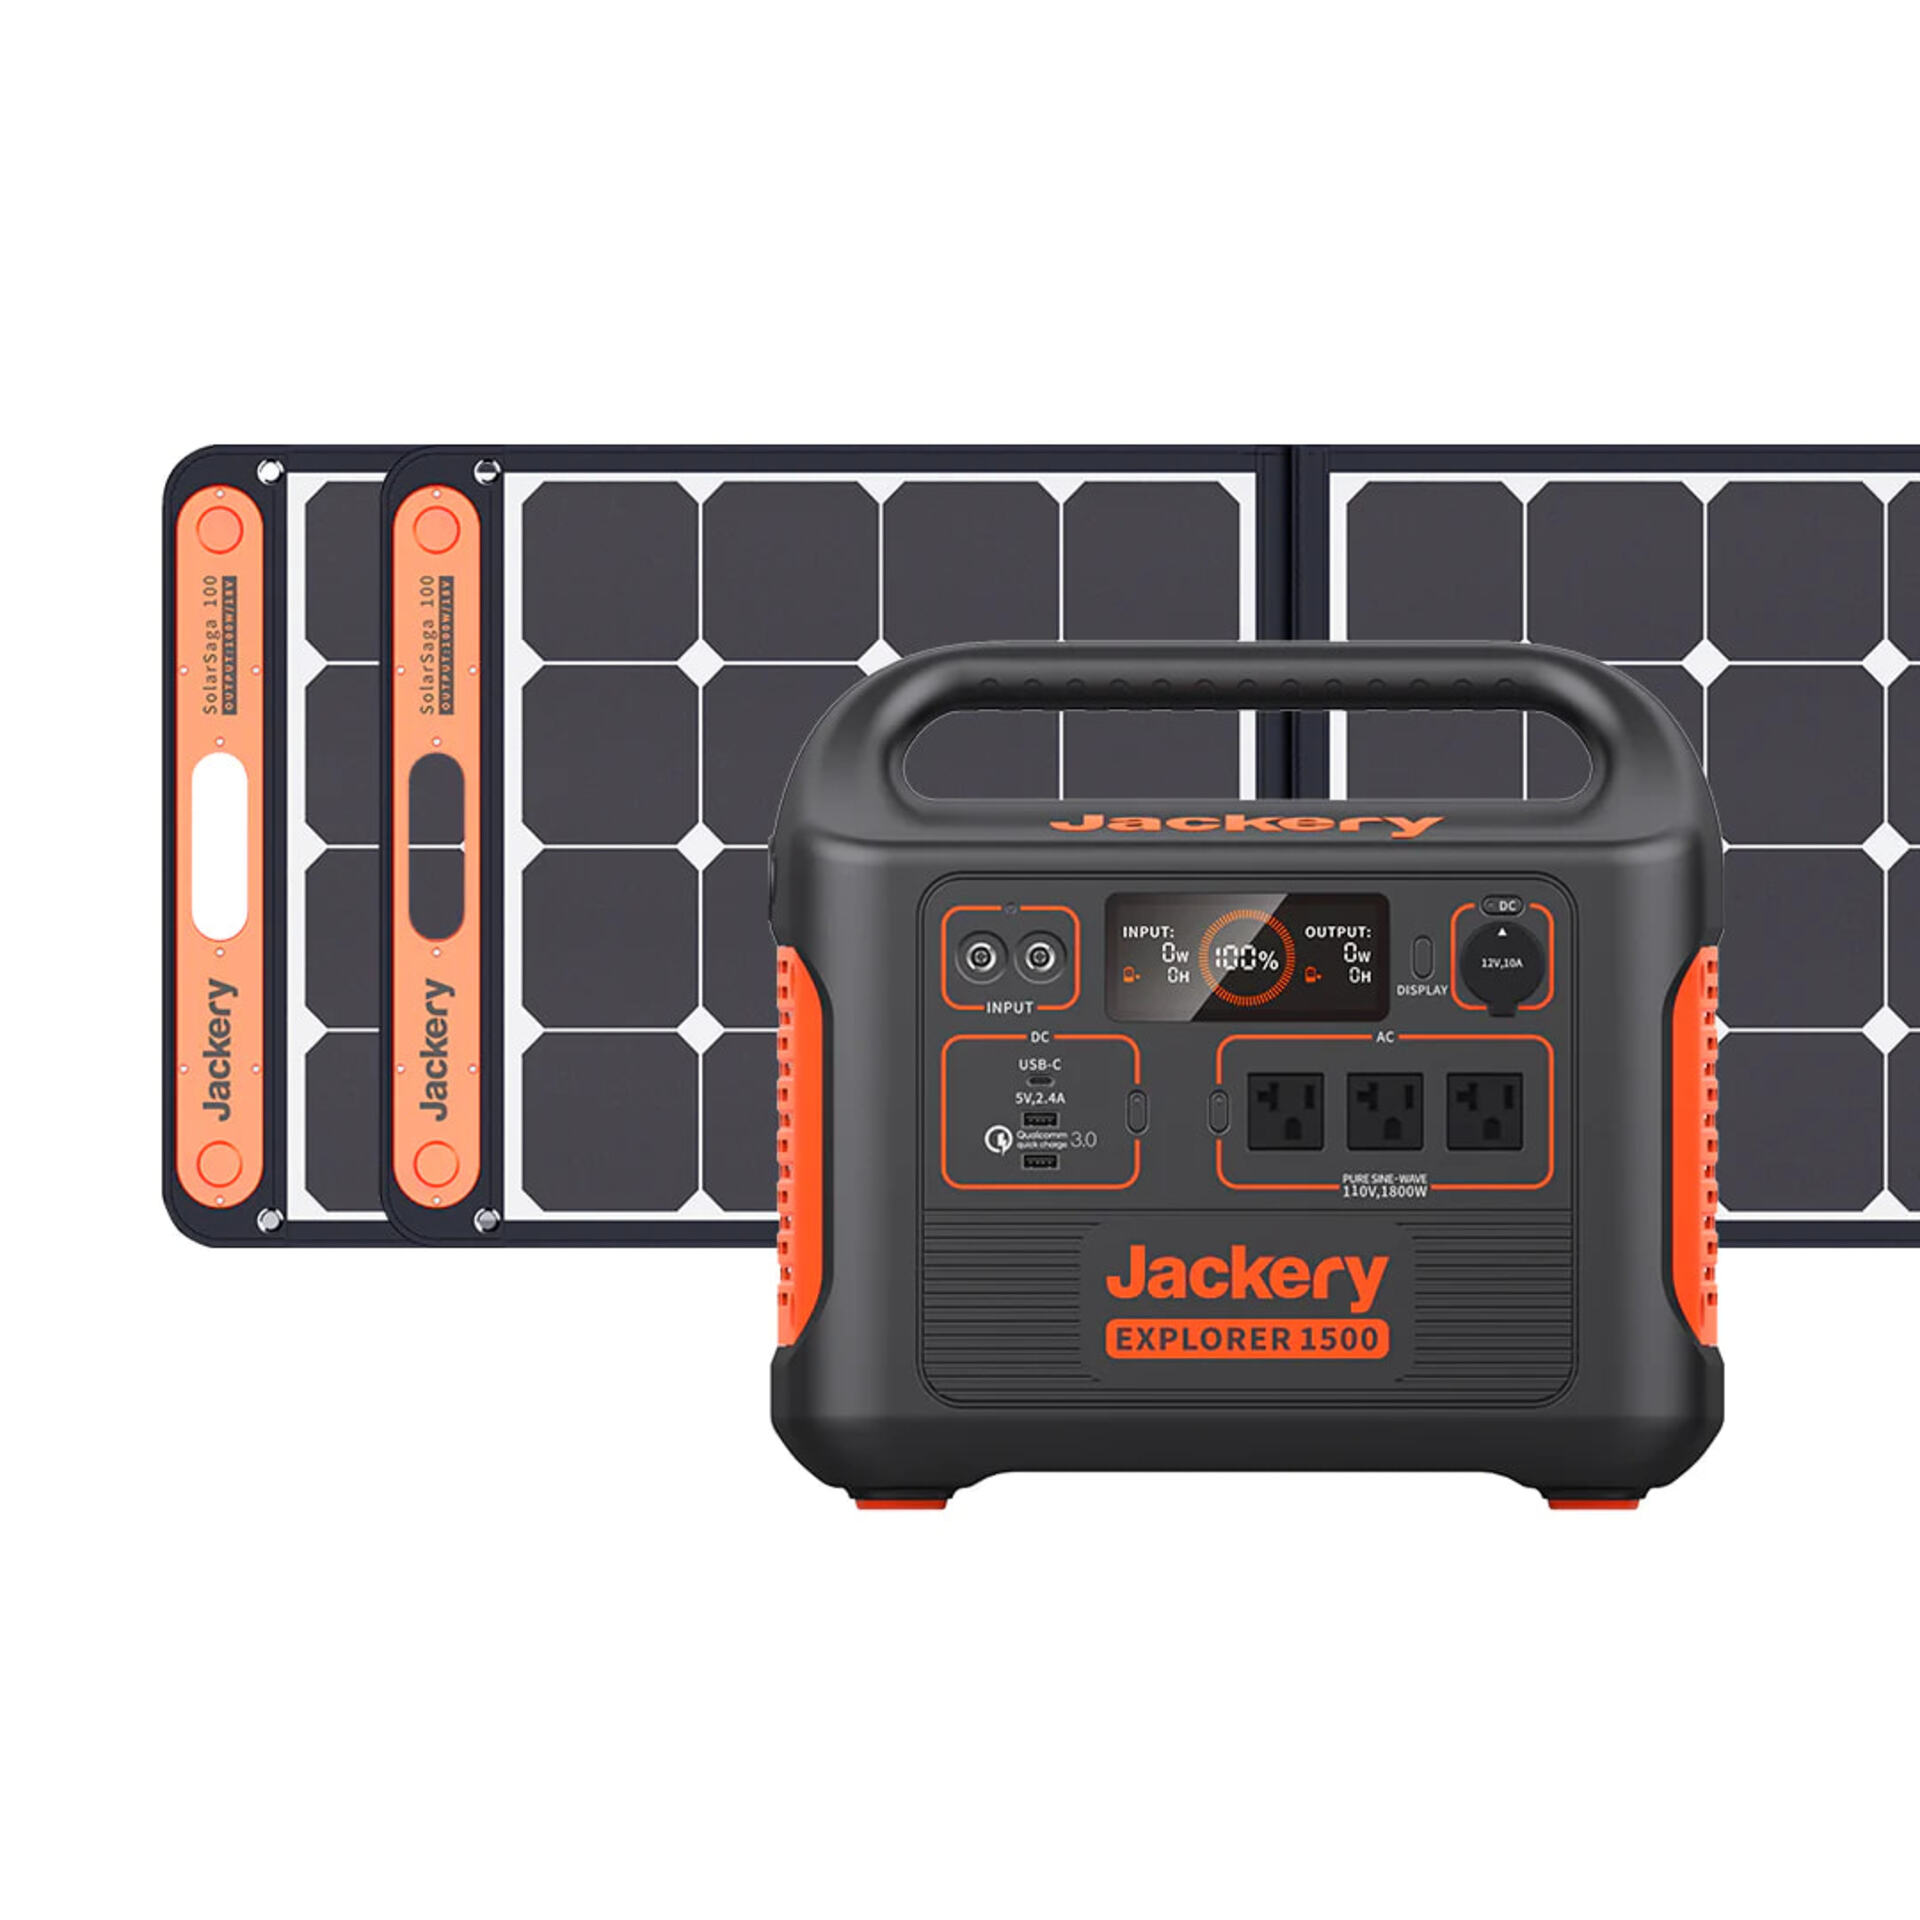 Jackery Solar Generator 1500, 2xSolarSaga 100W Solar Panel